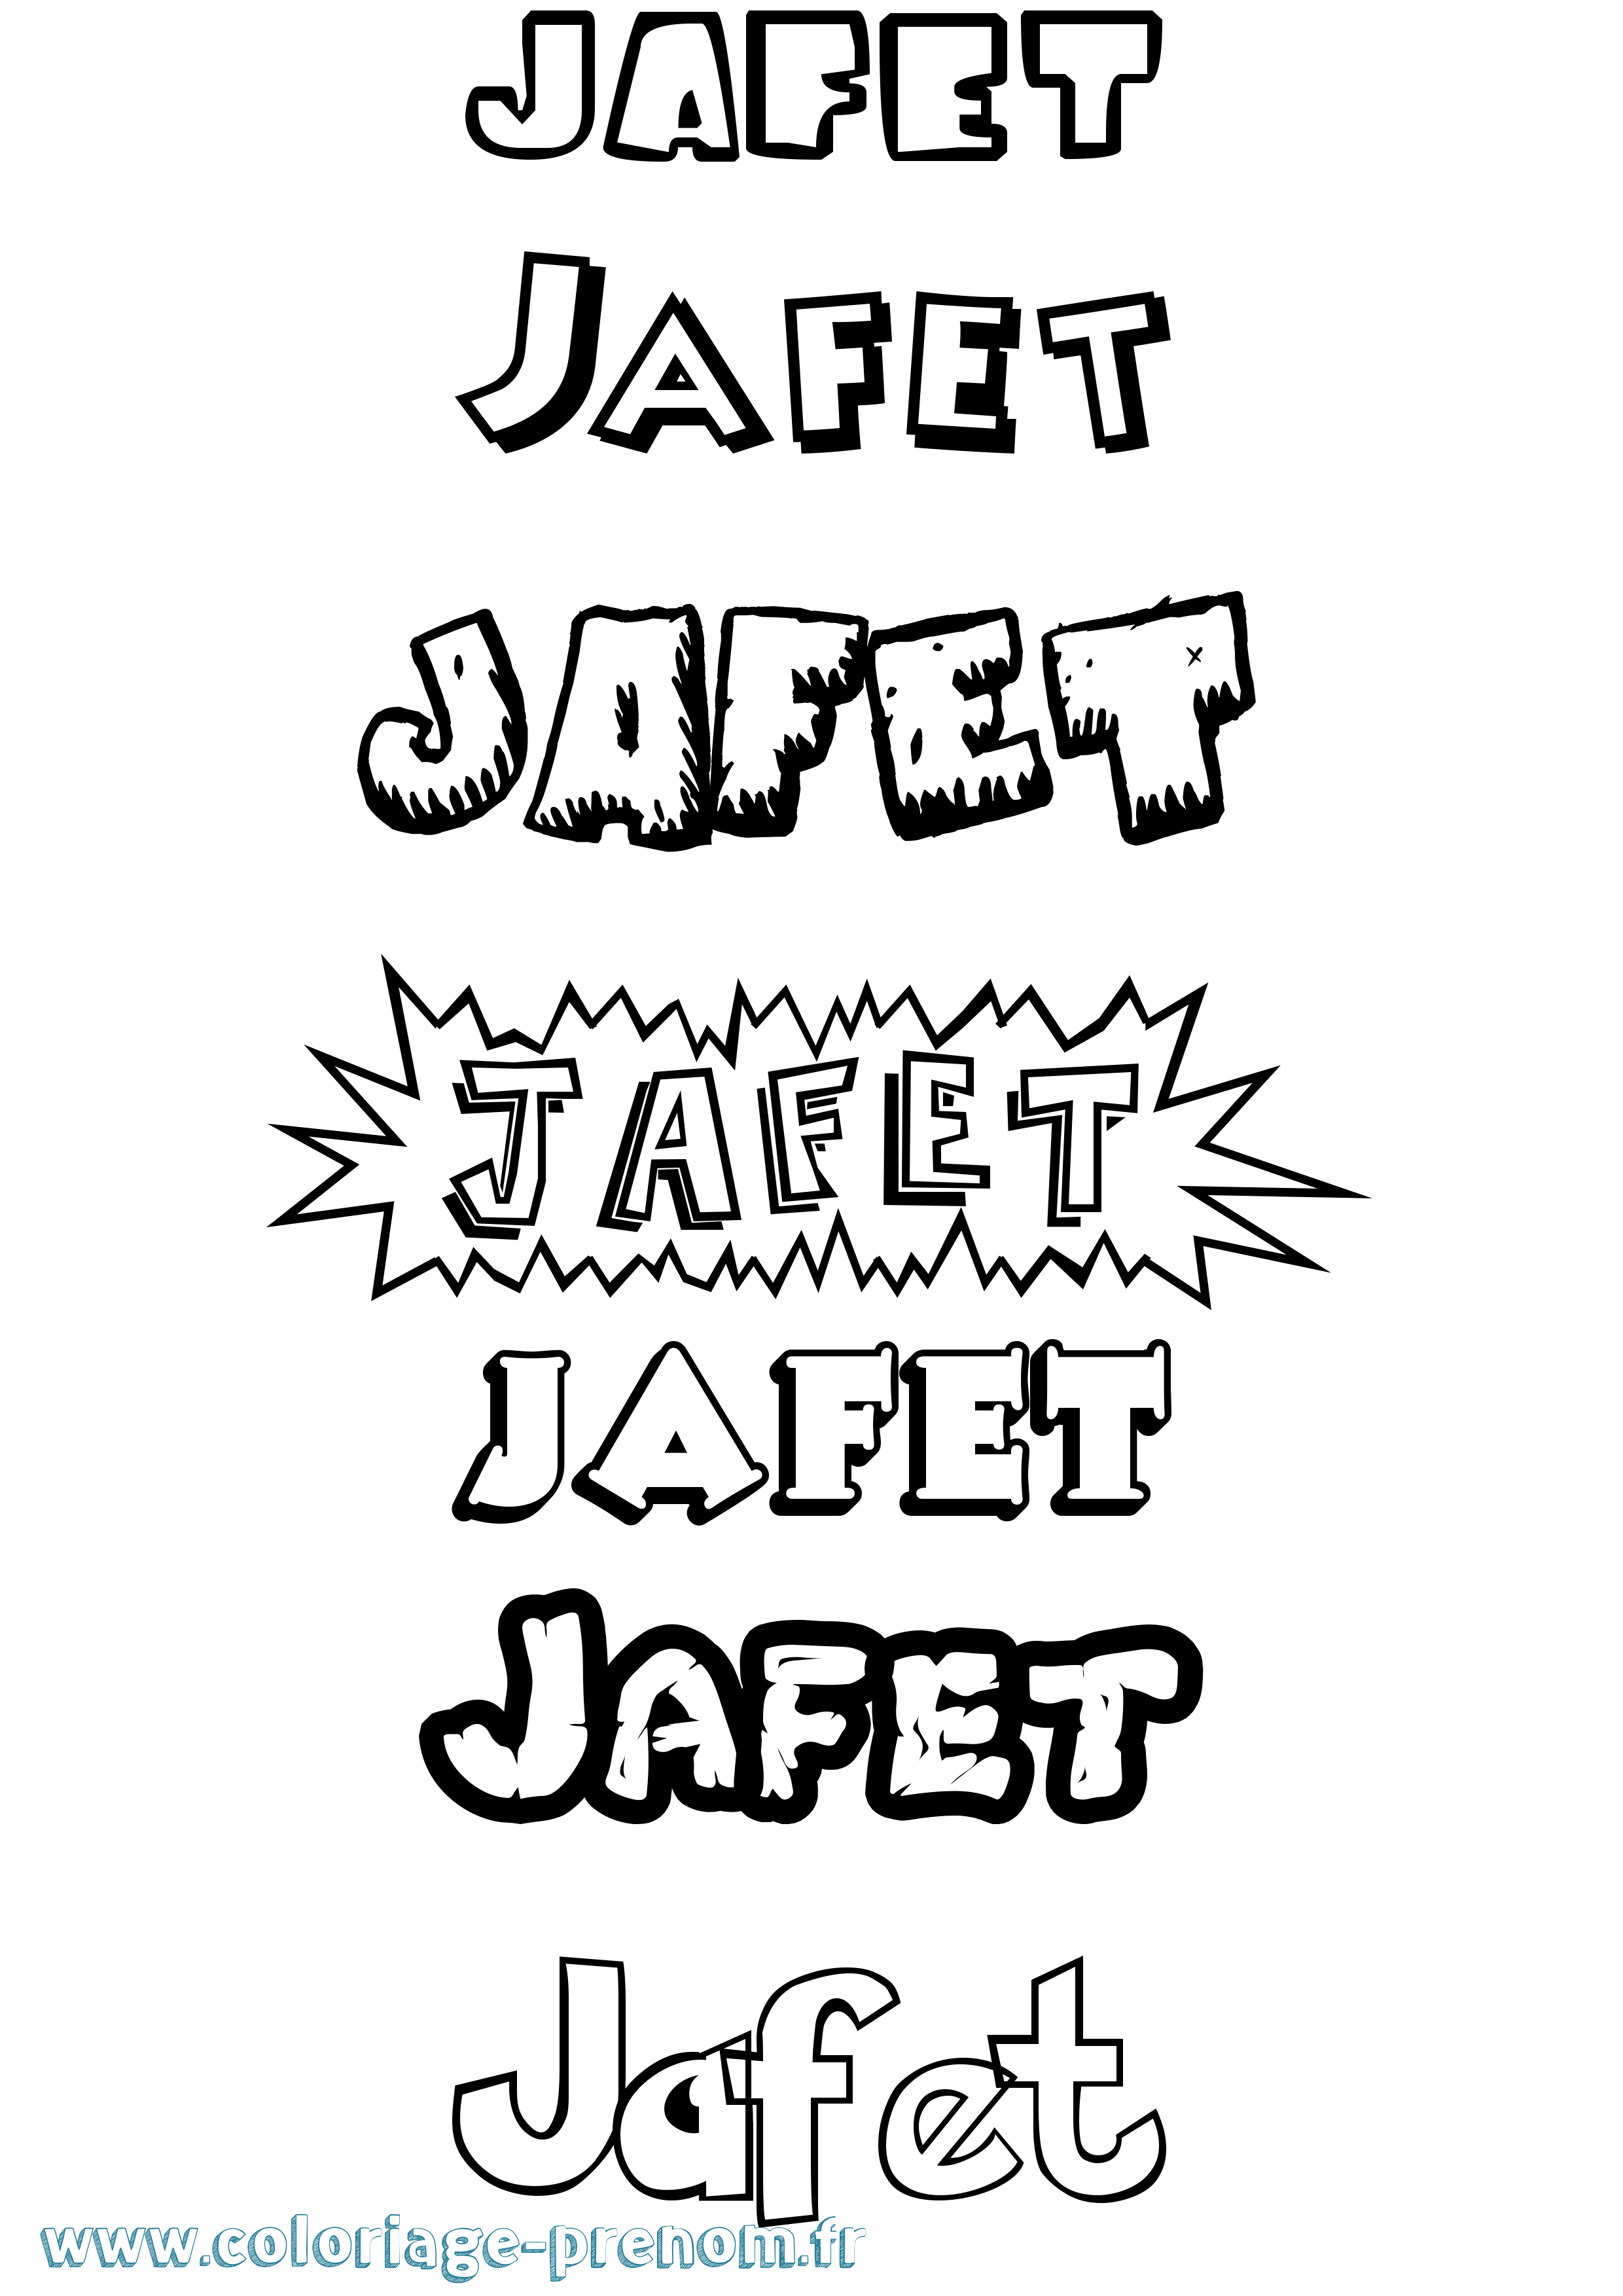 Coloriage prénom Jafet Dessin Animé